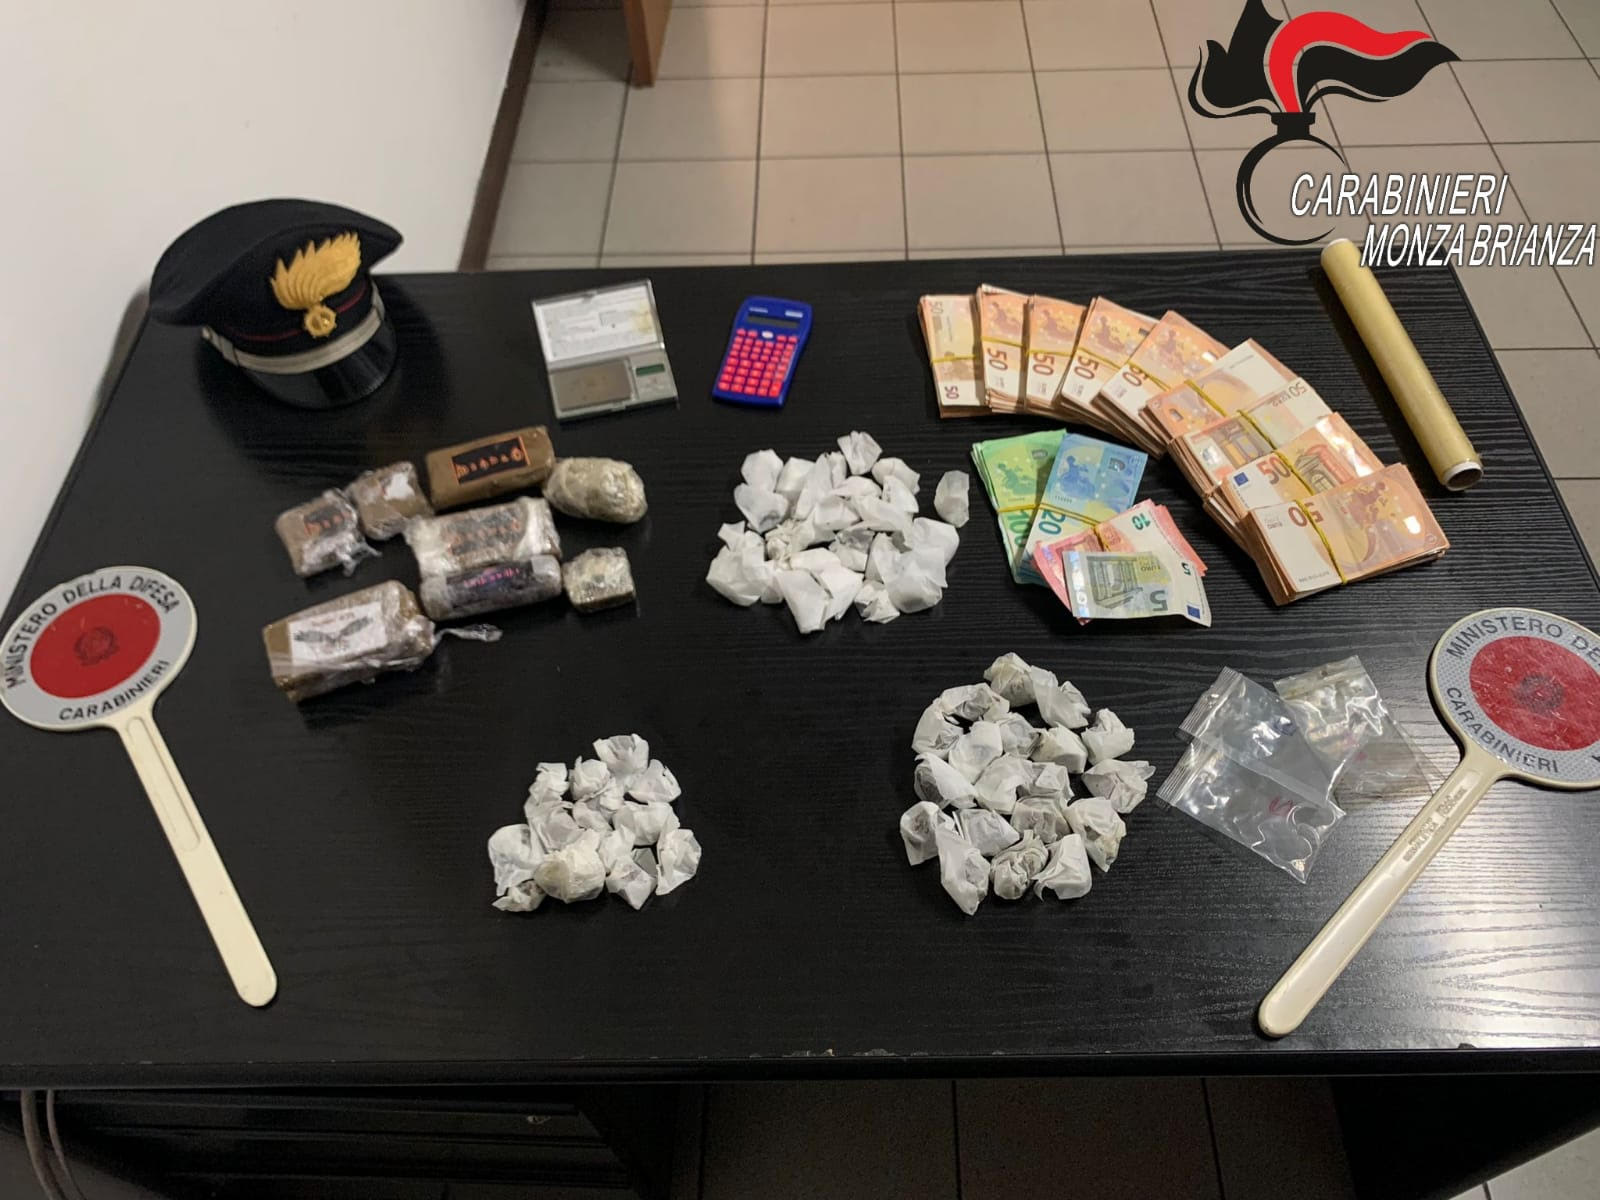 La droga, 1 kg di hashsh, e i soldi sequestrati dai Carabinieri di Monza-Brianza Sabato 10 settembre 2022